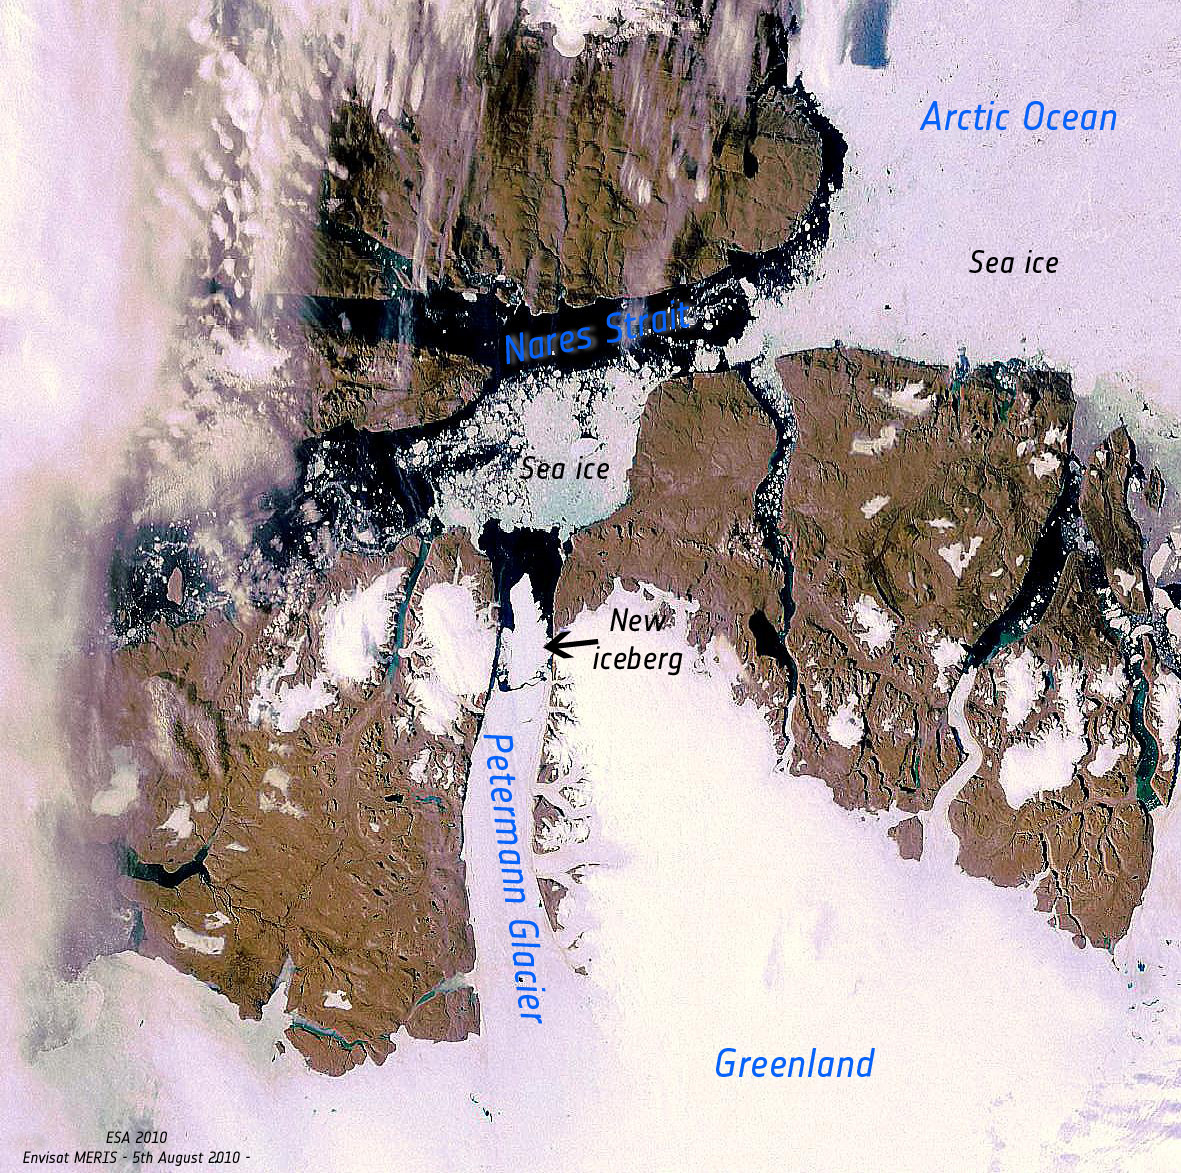  Une image en vraies couleurs obtenue par l'instrument Meris (Medium Resolution Imaging Spectrometer) à bord du satellite Envisat, montrant la rupture du glacier Petermann. © Esa